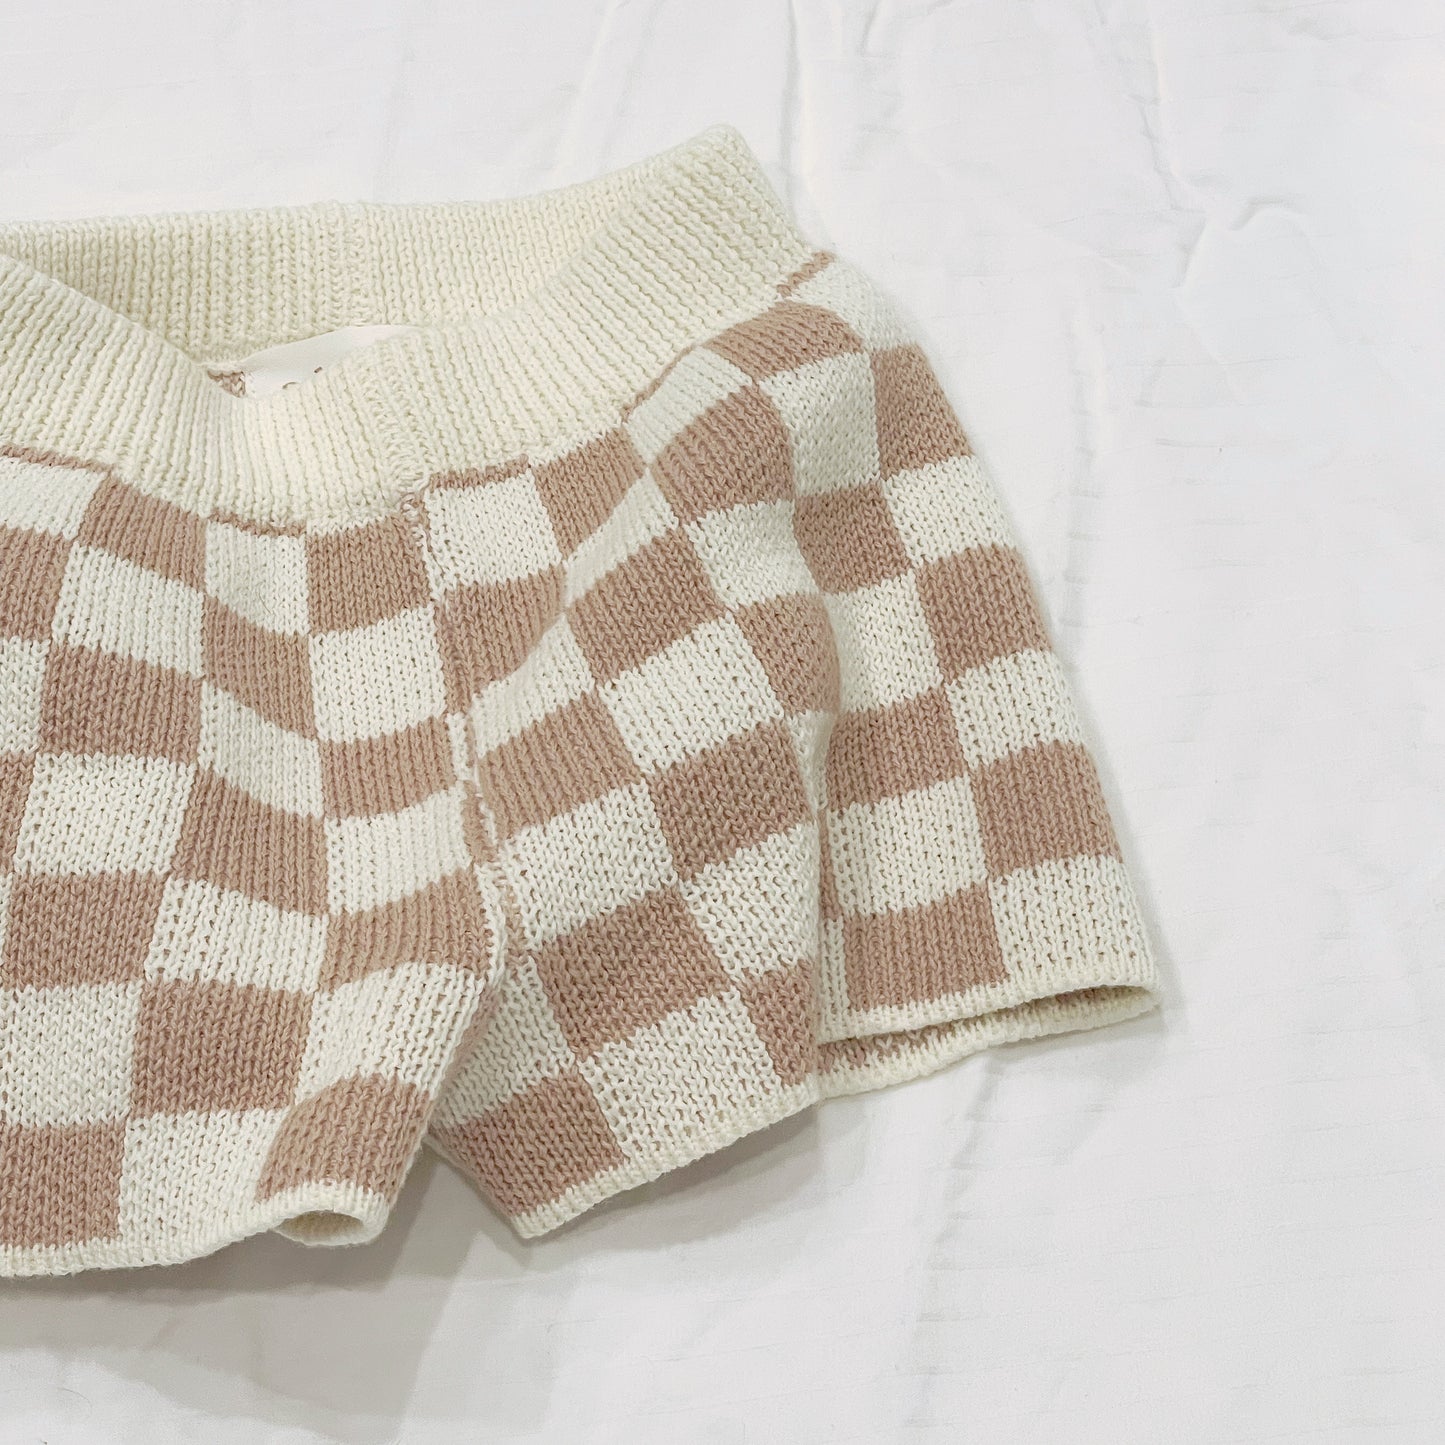 Checkered Knit Shorts - Tan